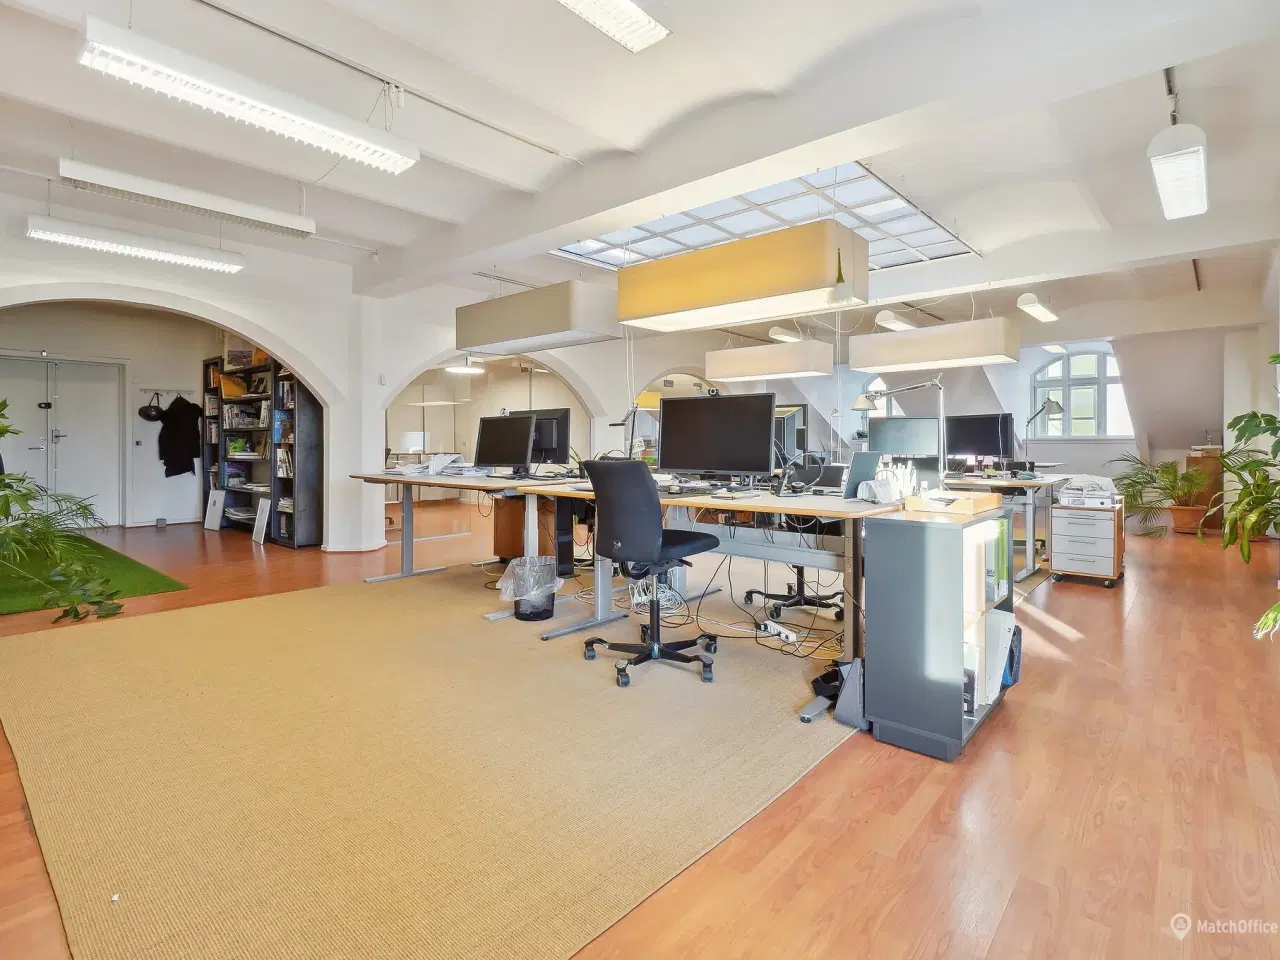 Billede 6 - 339 m² storrumskontor med flere kontorer og mødelokaler udlejes i Kongensgade i Odense City